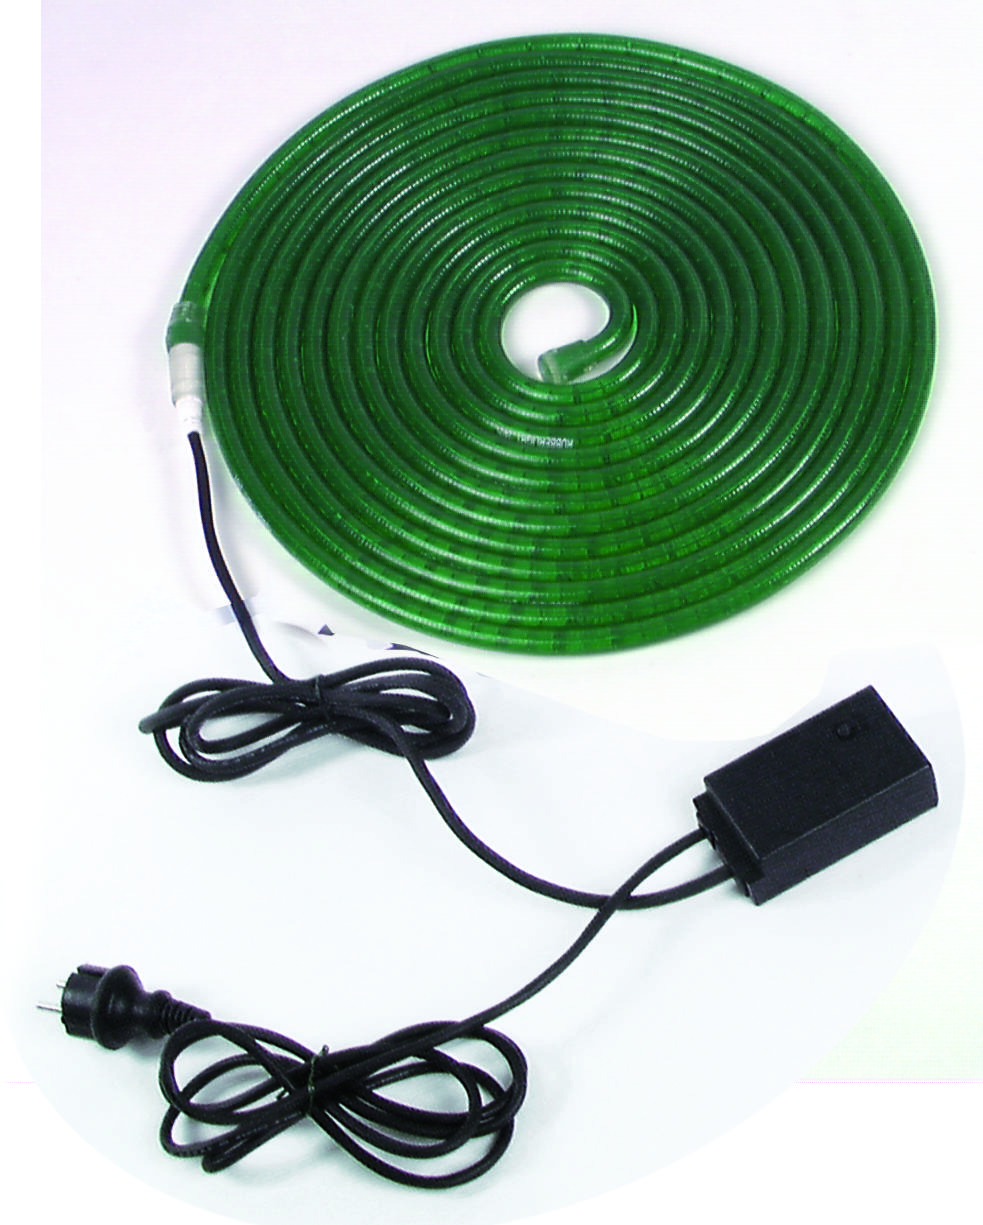 Světelná kabel, zelený, 10m s ovladačem